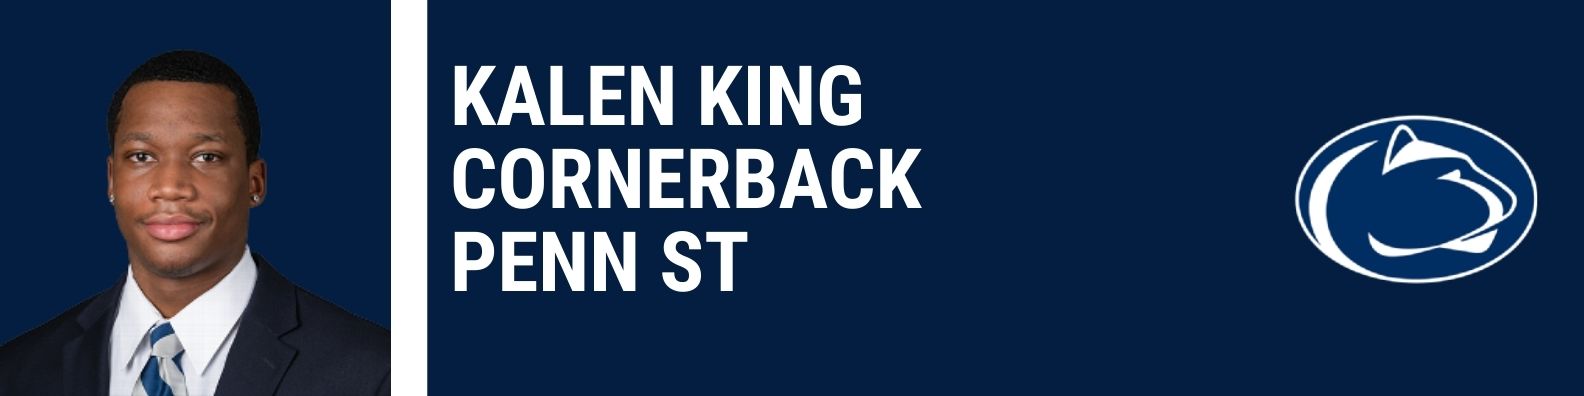 Kalen King, Penn St